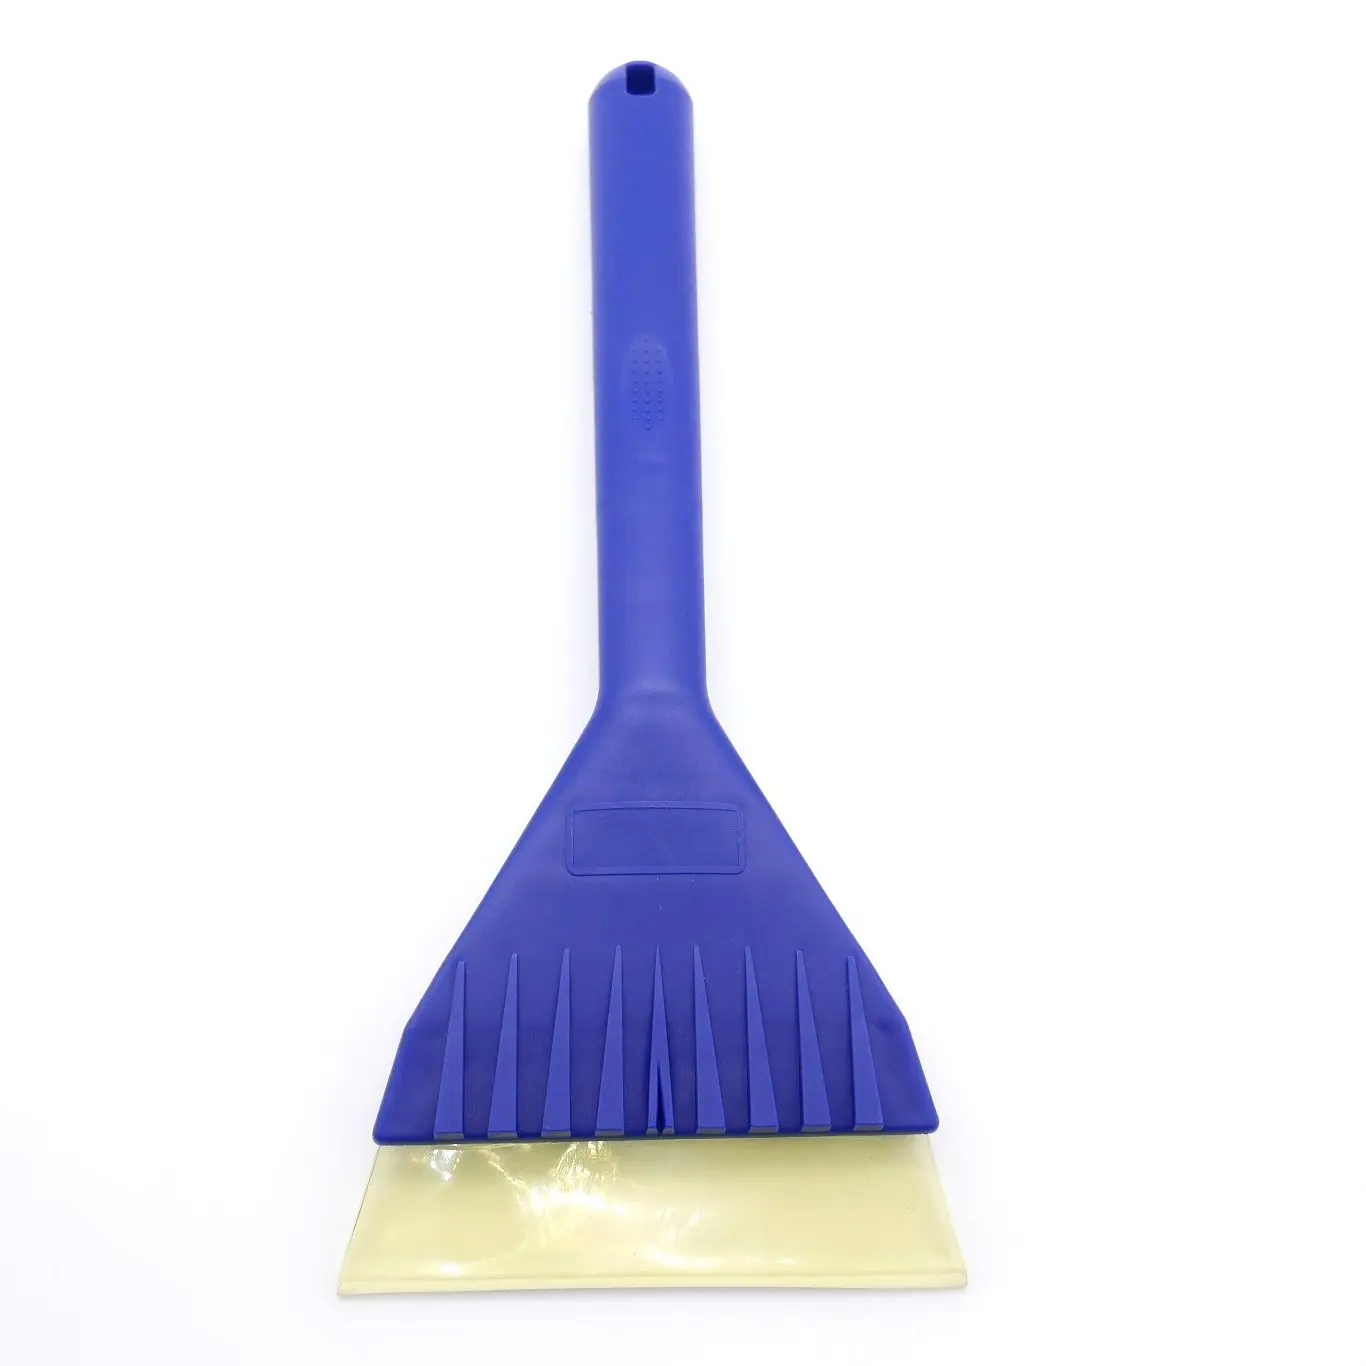 Универсальная лопатка для мытья автомобильных стекол VOTEX для удаления пыли, наледи и воды, синяя, 1 шт